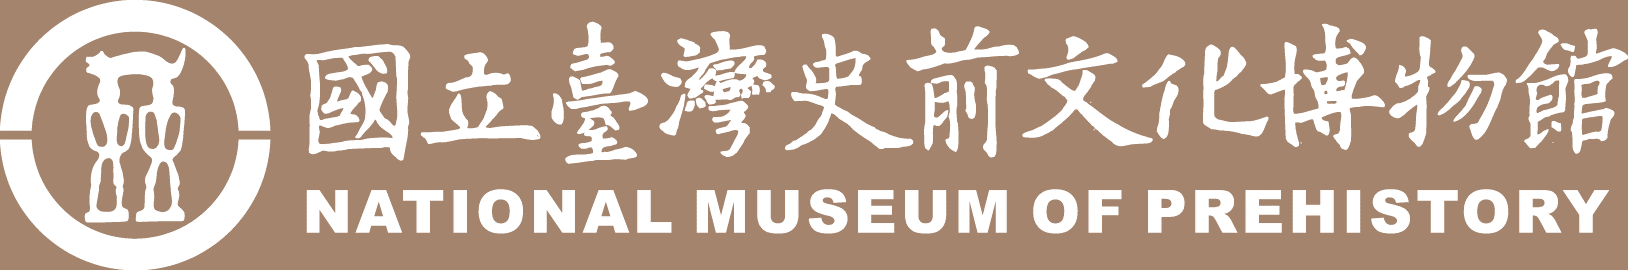 國立科學博物館logo